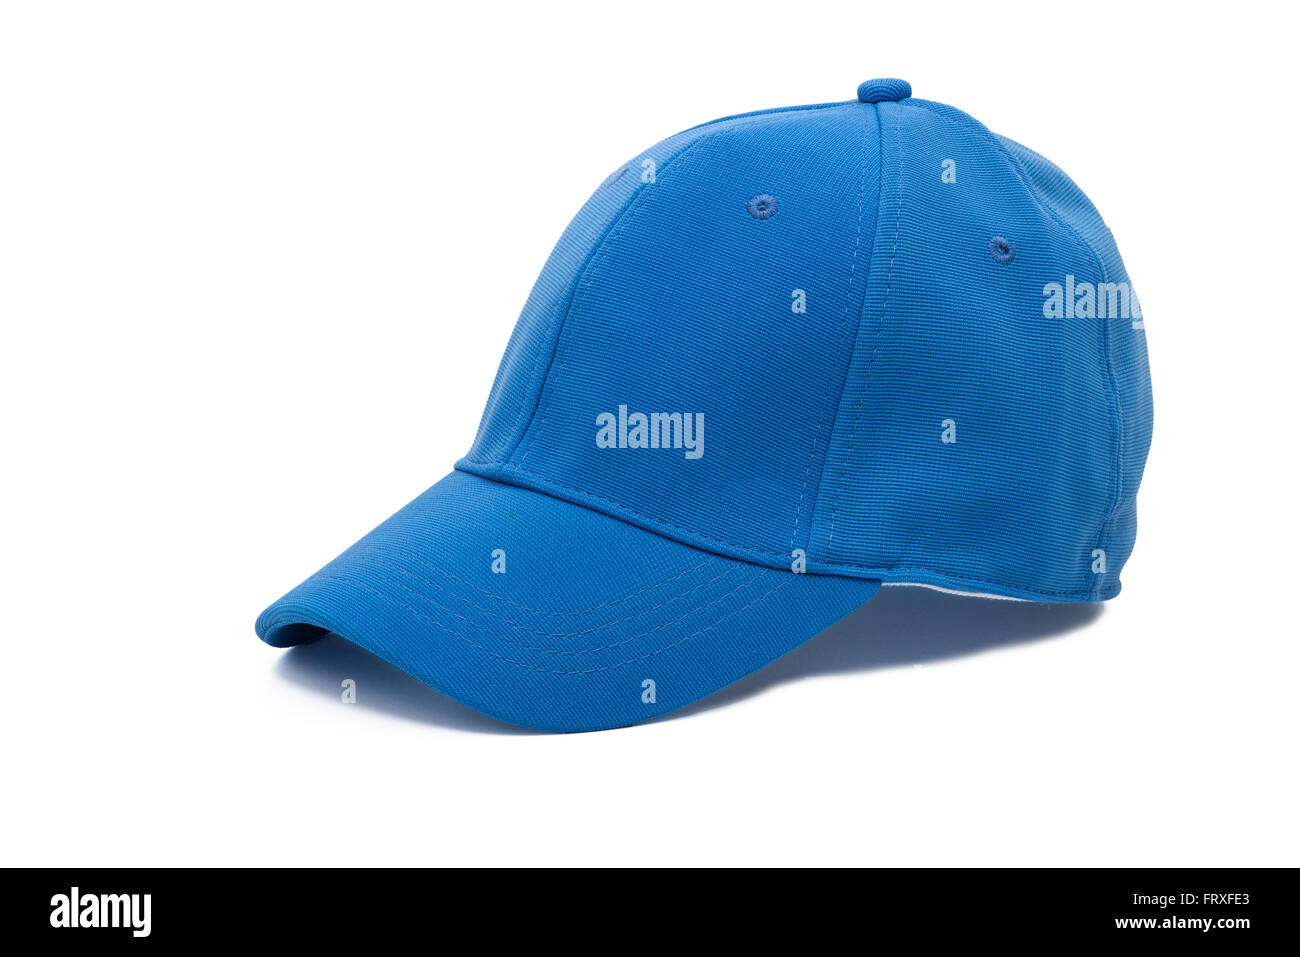 Men's blue golf cap sur fond blanc Banque D'Images